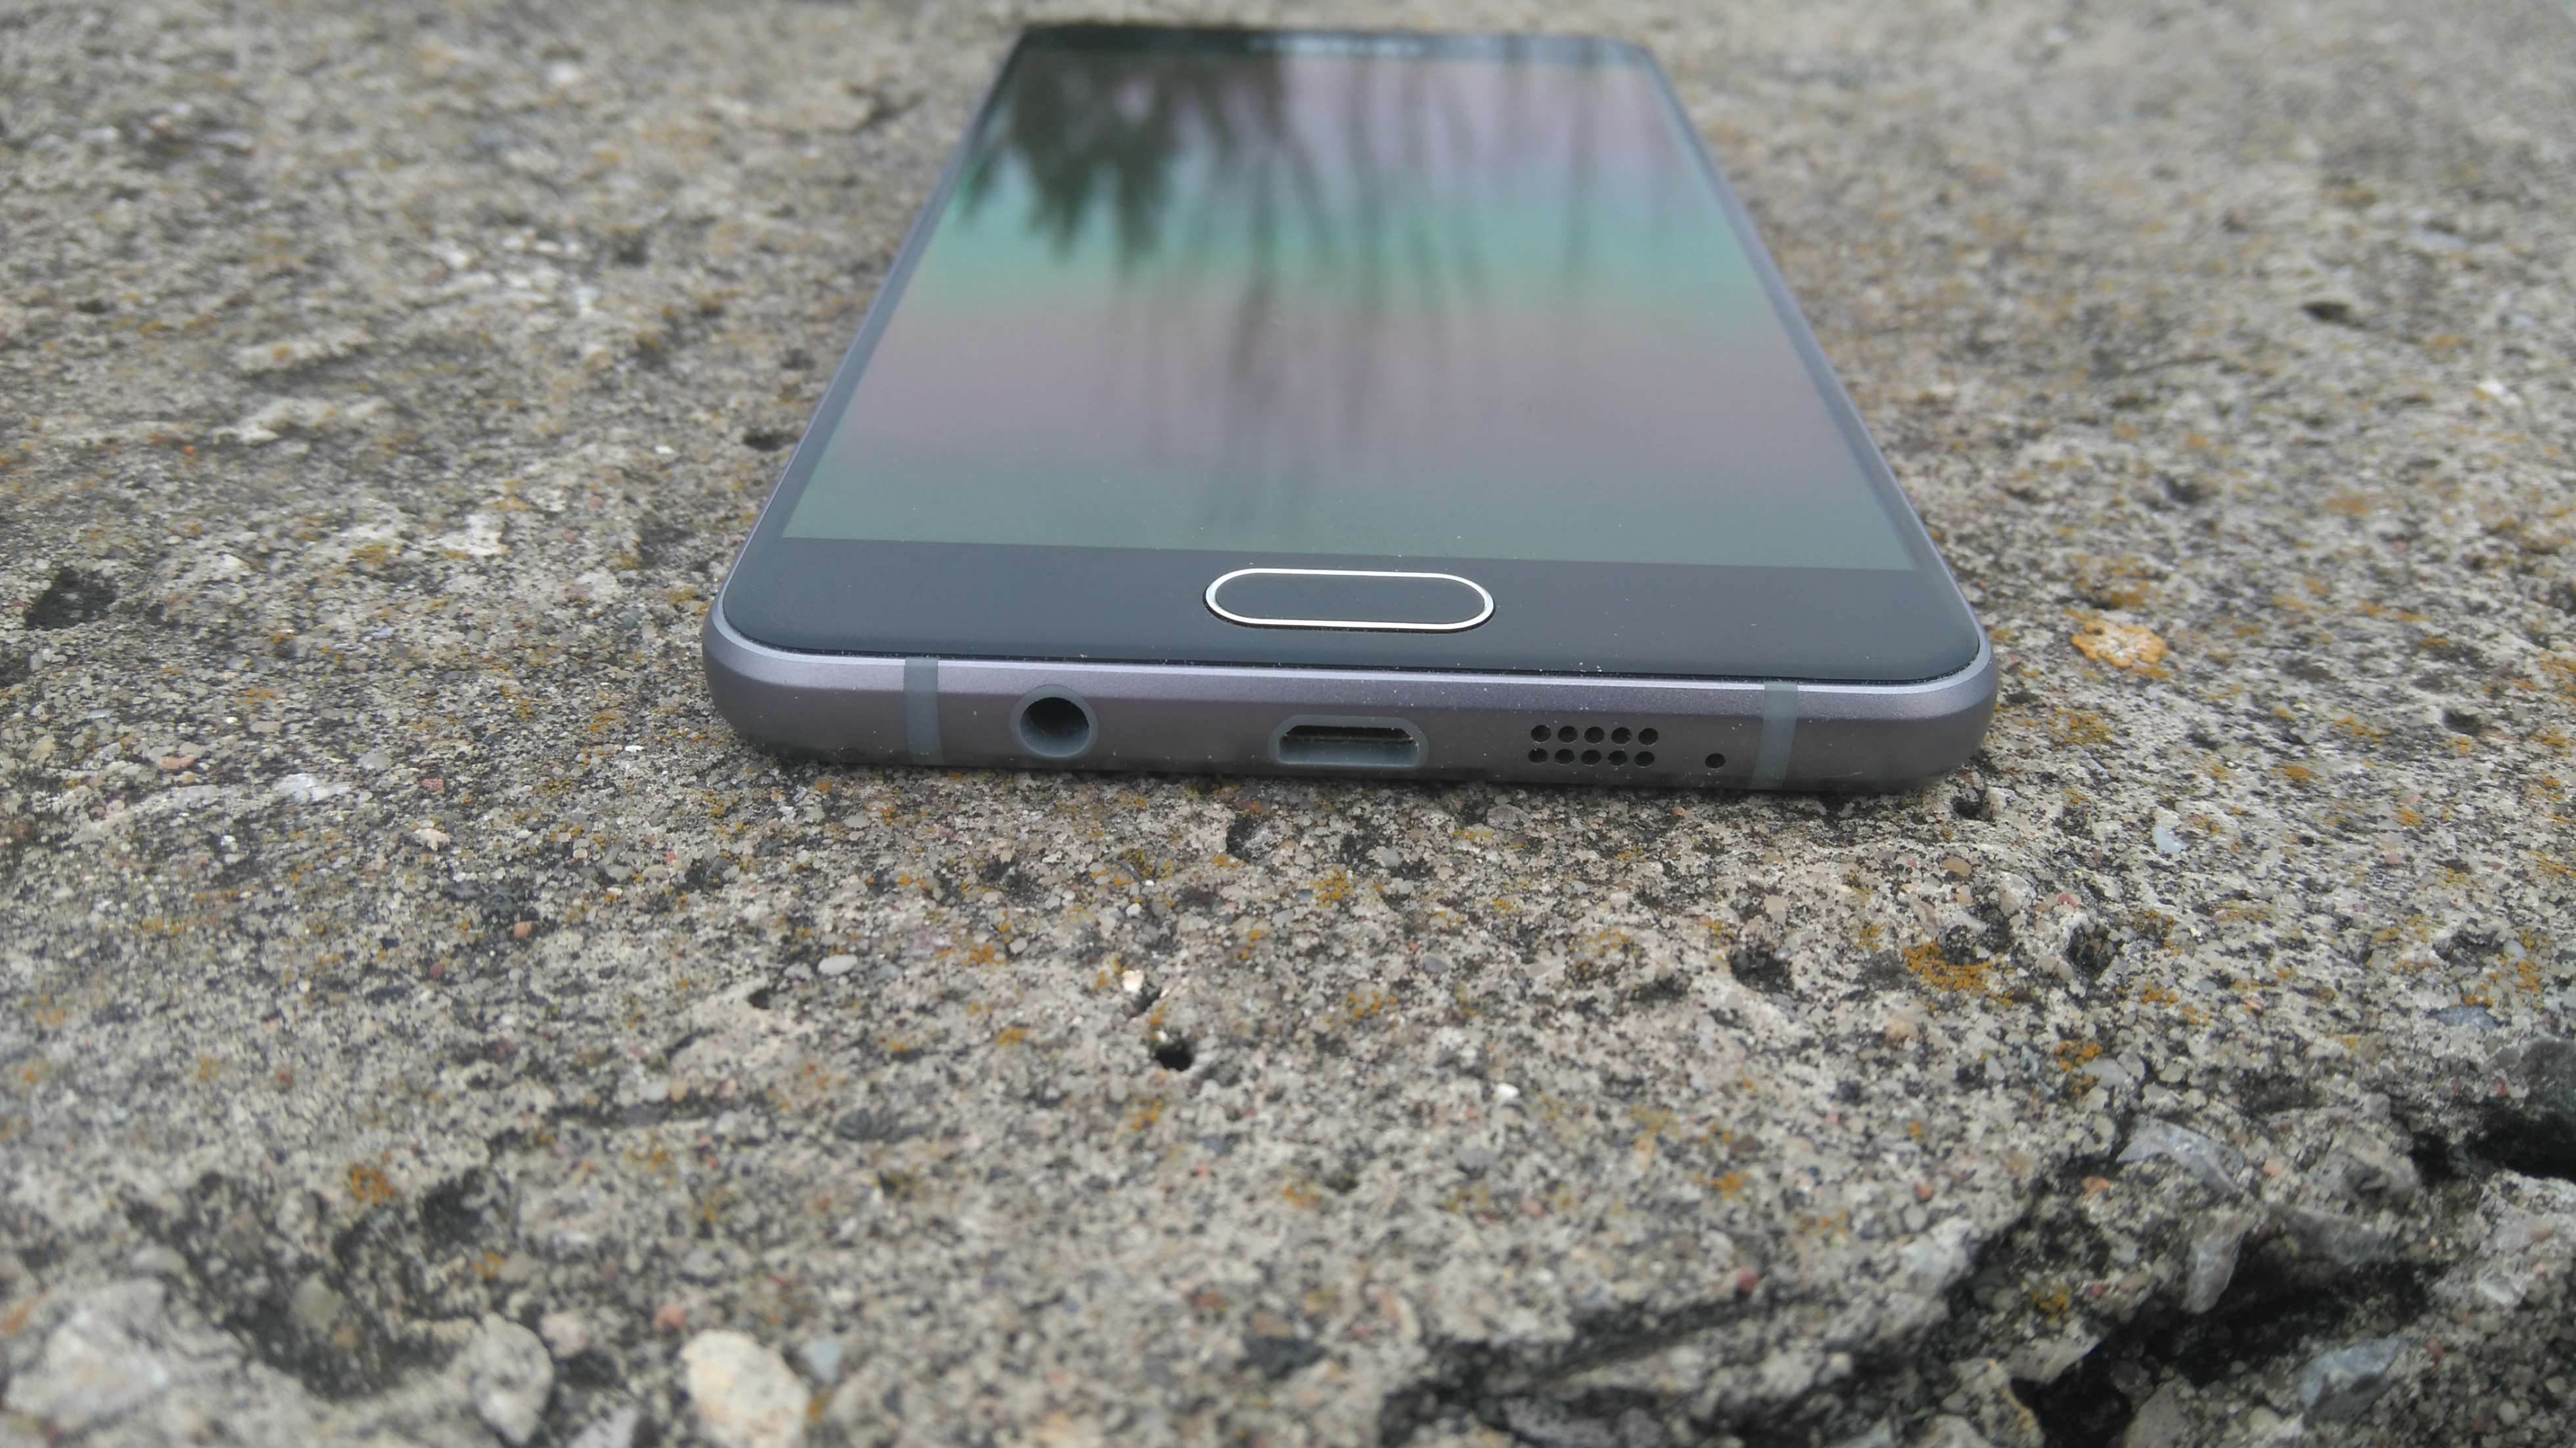 Samsung Galaxy A5 (2016) - recenzja urządzenia recenzje, polecane zalety, wady, Specyfikacja, Samsung Galaxy A5 2016, Samsung, recenzja Samsung Galaxy A5 (2016), Recenzja, polska recenzja, Opis, czy warto kupić Samsung Galaxy A5 (2016), cena, a5 z 2016, 2016  Samsung na nowo zapałał miłością do wysokiej jakości wykonania swoich mobilnych produktów, czego dowodem jest tegoroczna seria A. DSC 0008 1